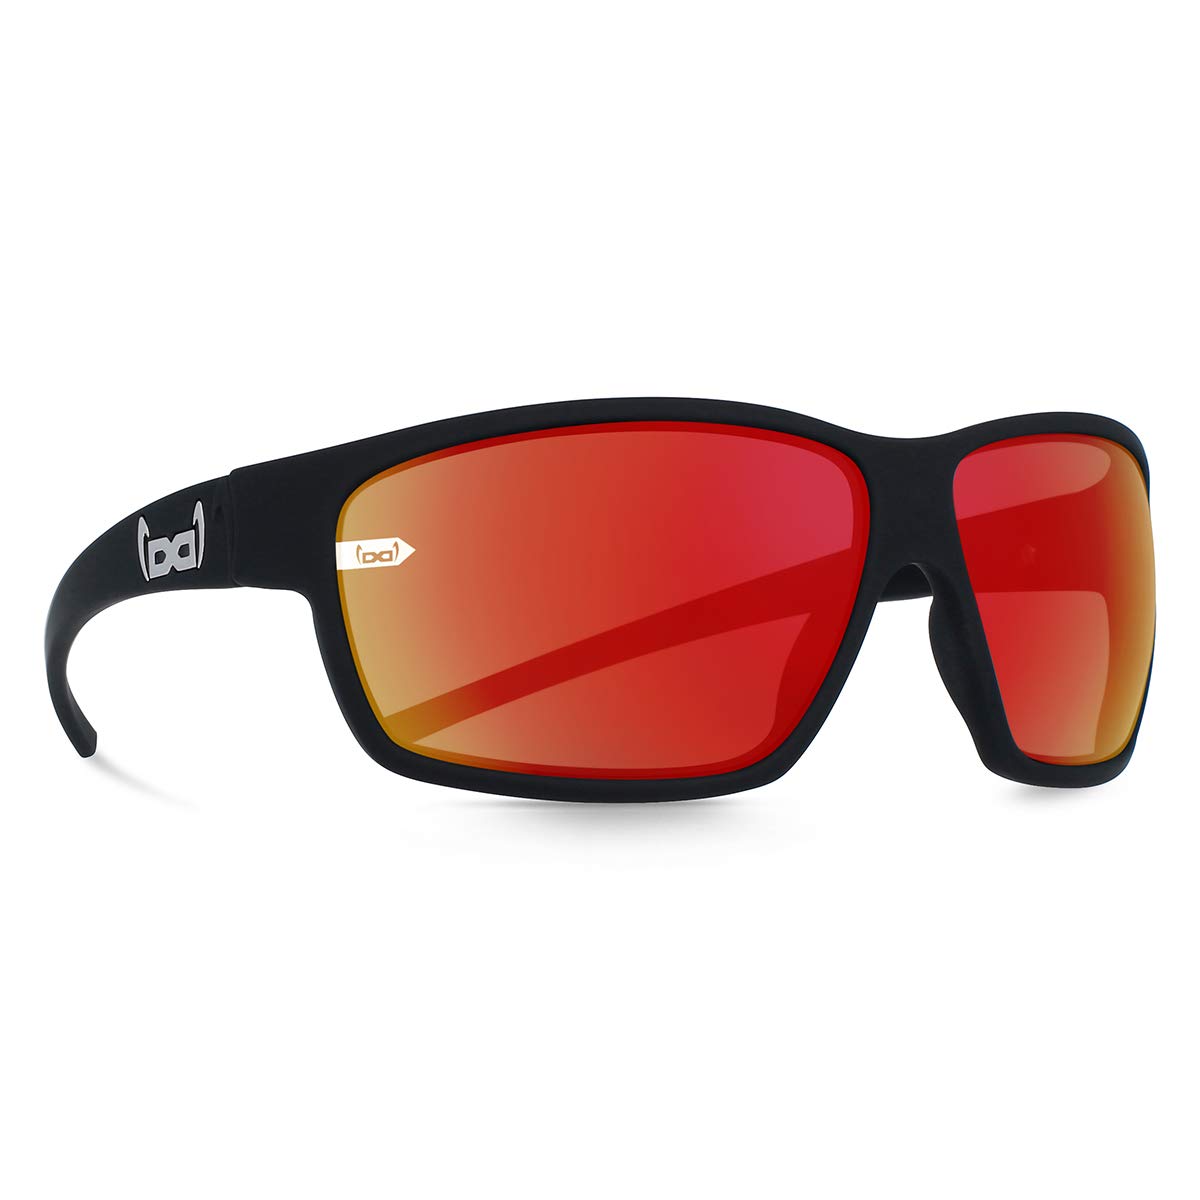 Gloryfy unbreakable eyewear (G15 blast red) - Unzerbrechliche Sonnenbrille, Sport, Damen, Herren, Rot-Verspiegelte Gläser